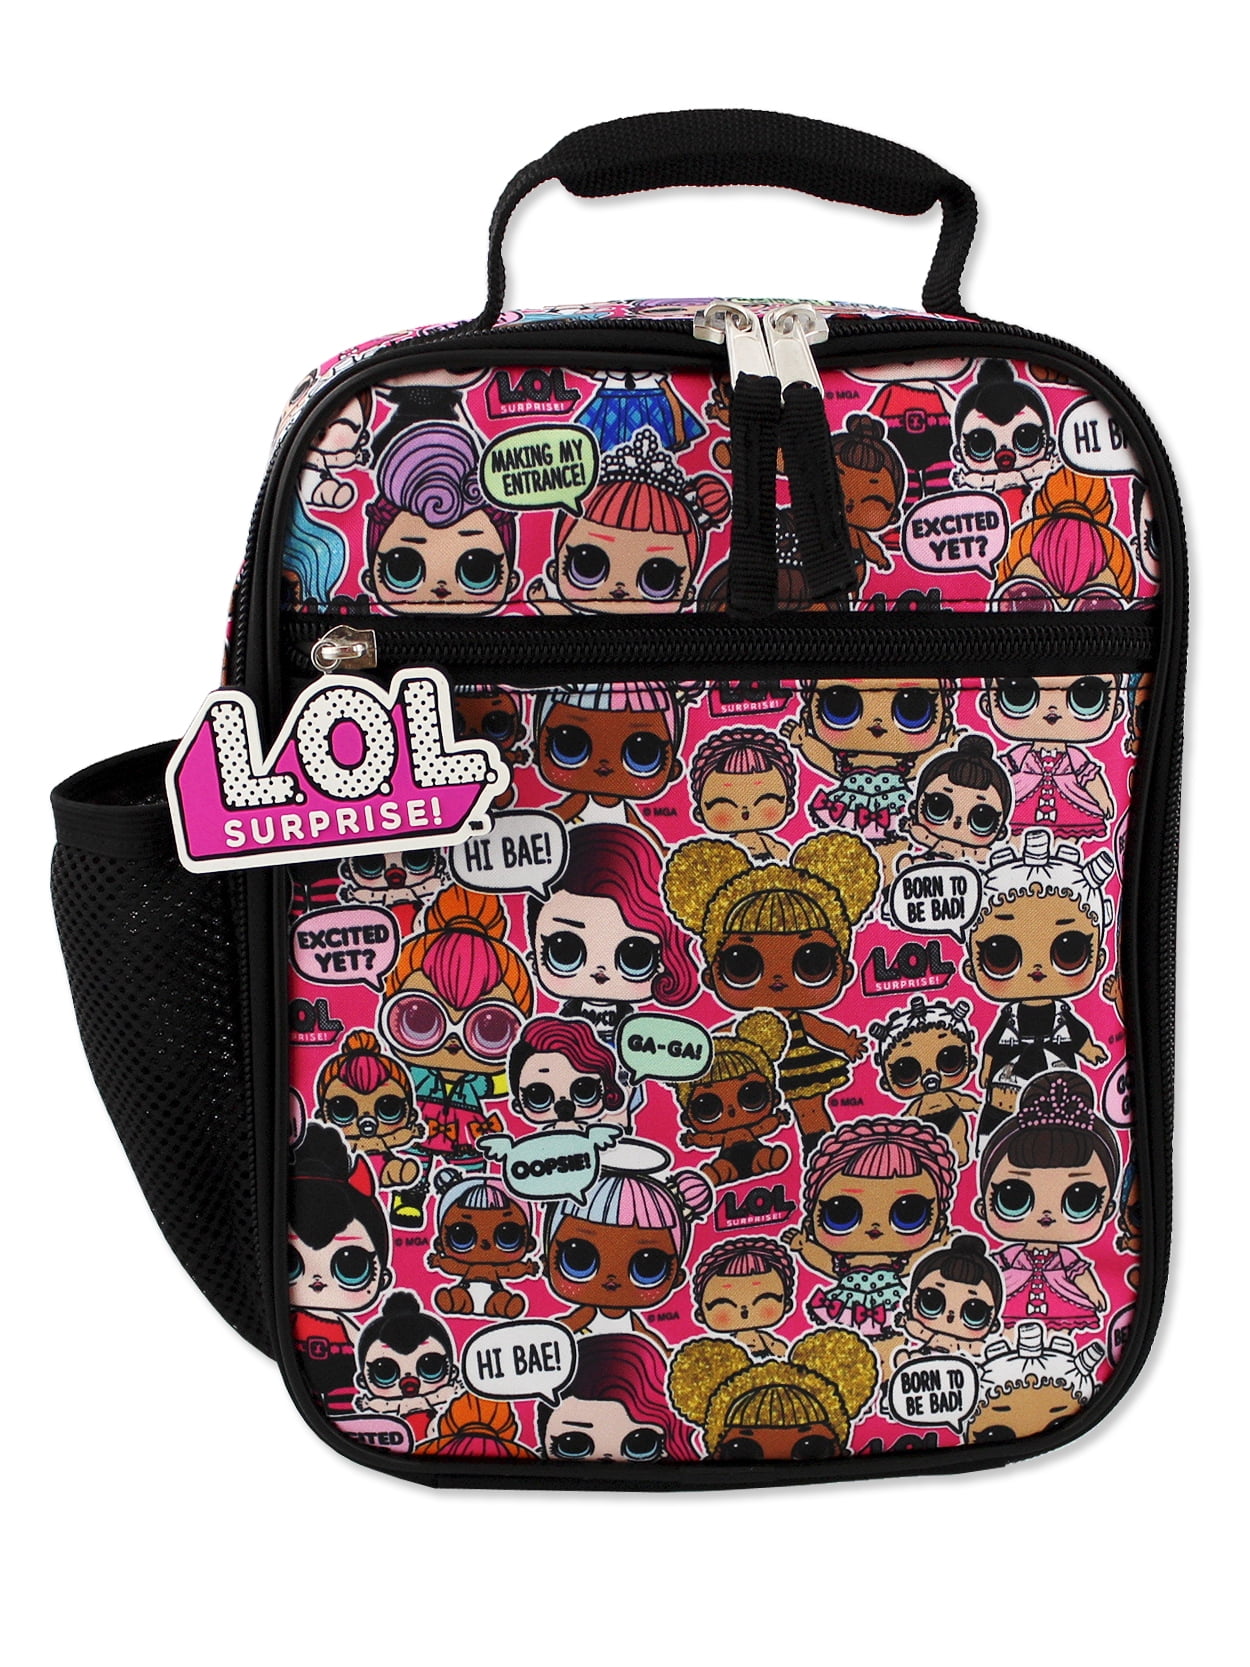 L.O.L Surprise! Cosmetic Gift Bag Sets - Walmart.com